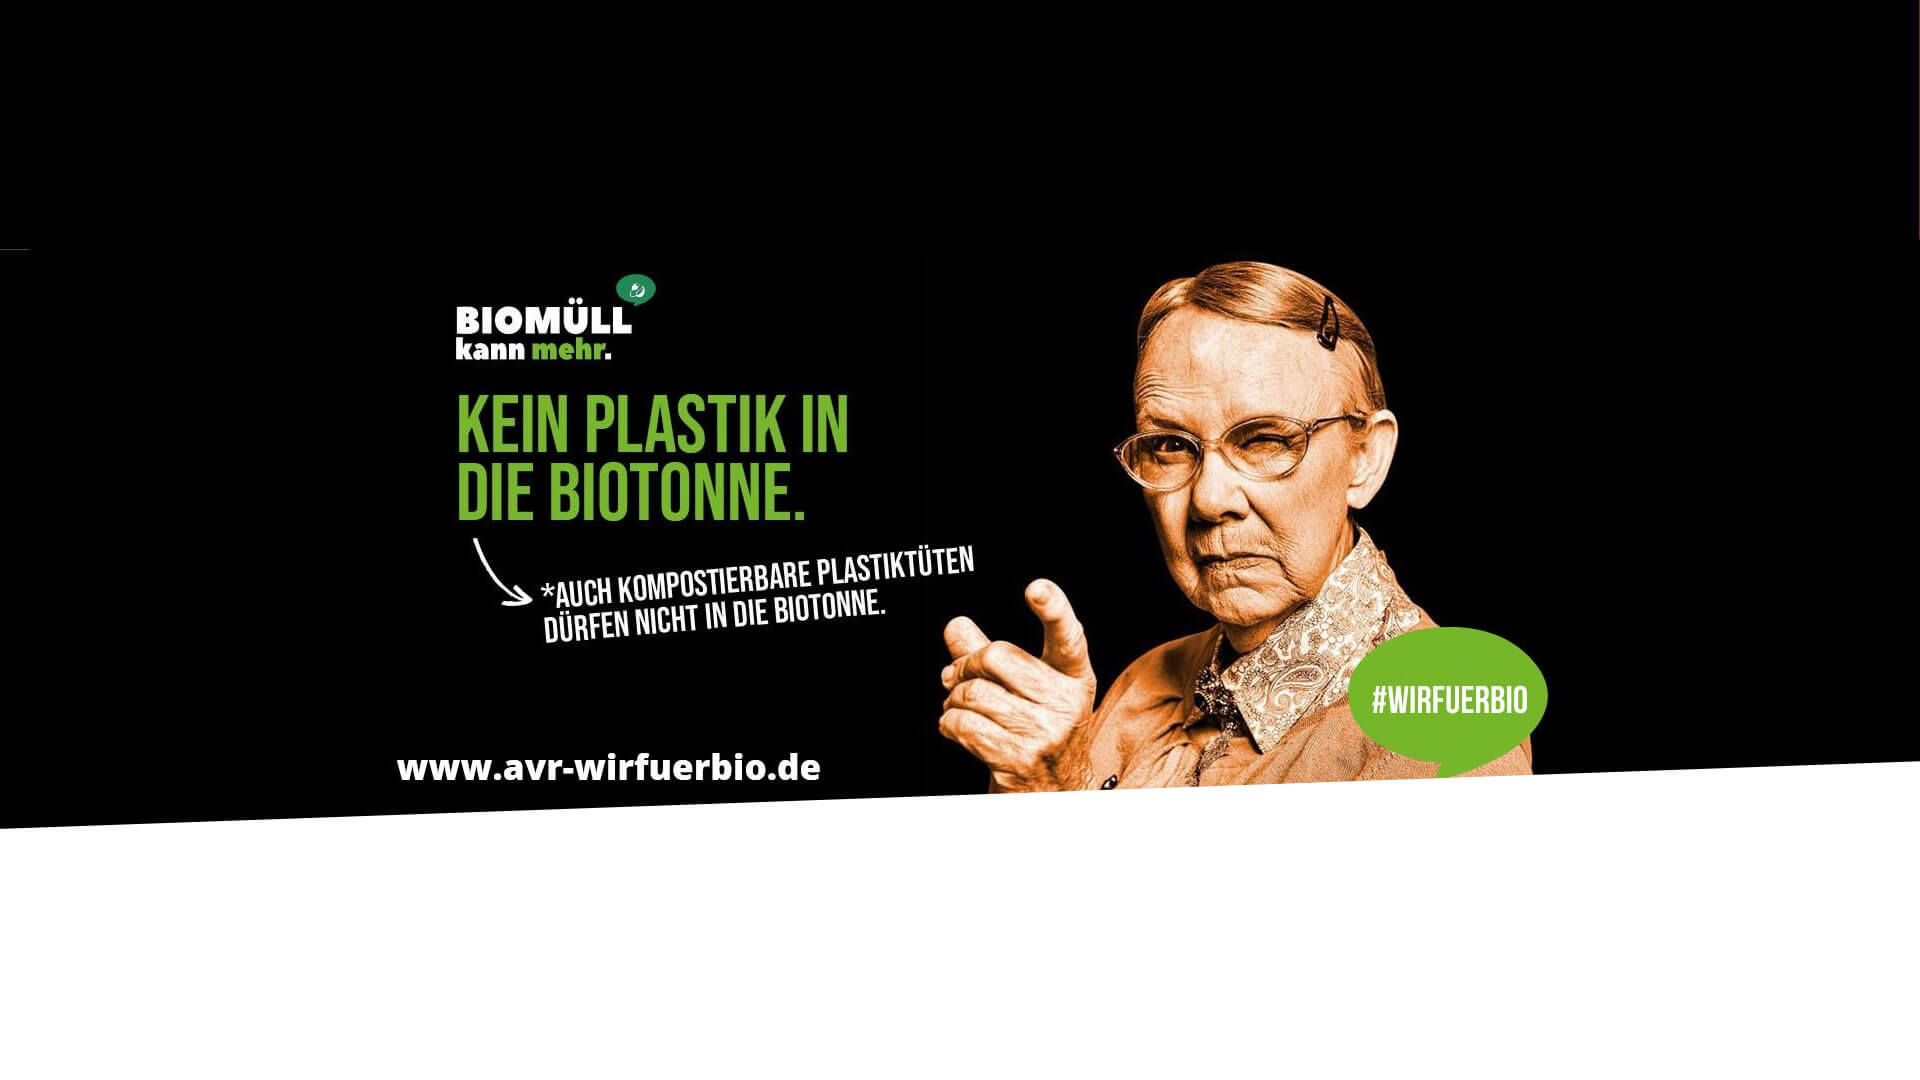 #wirfuerbio - Kein Plastik in die Biotonne